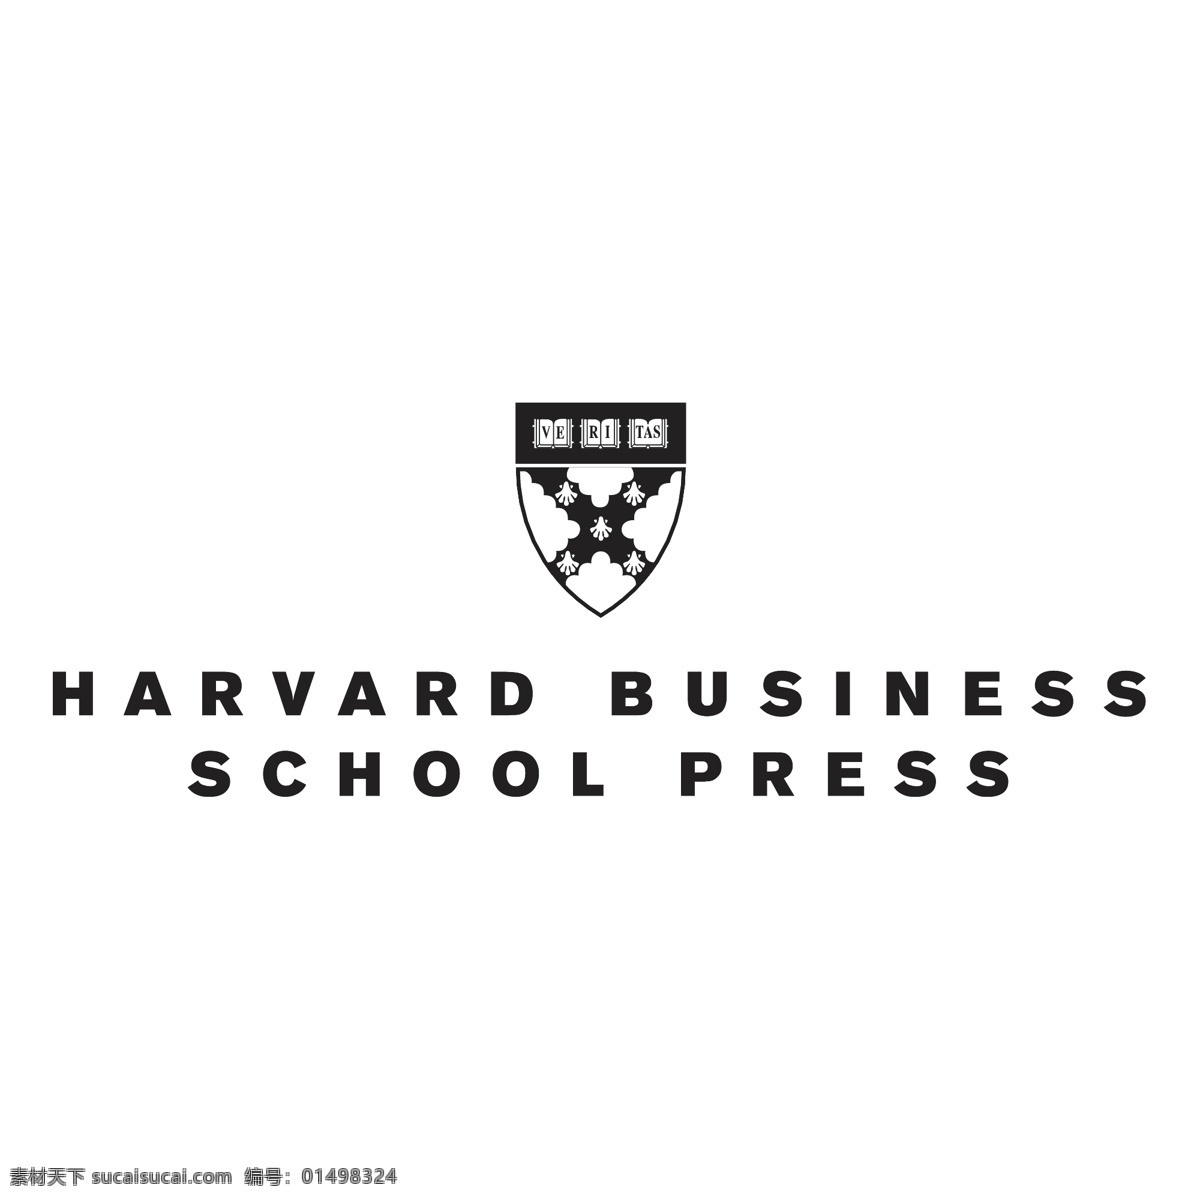 哈佛商学院 出版社 商业 图标 学校 哈佛 哈佛商业 商业学校 学院出版社 商学院 标志设计 矢量 商学院的图标 向量 建筑家居